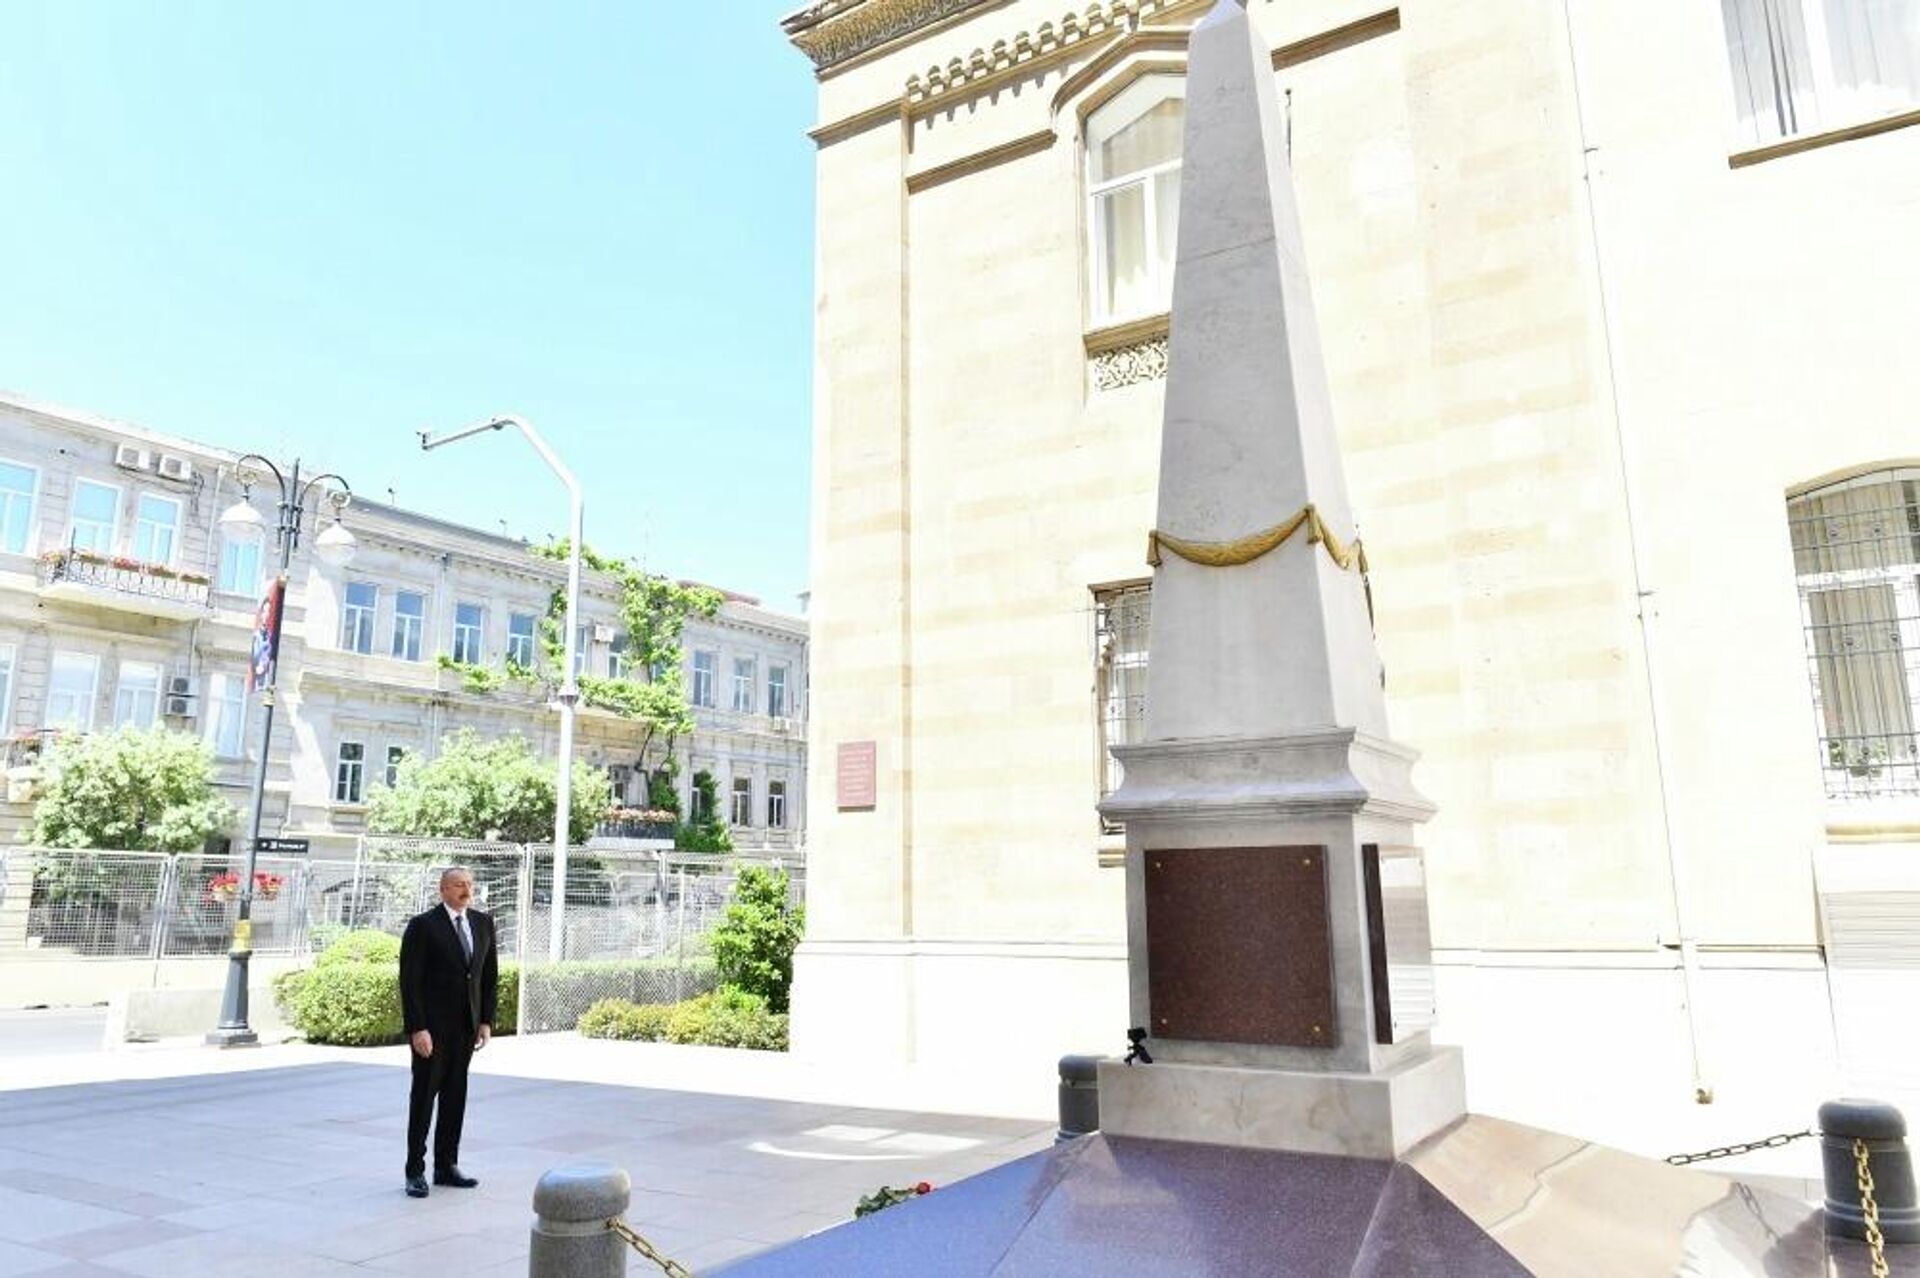 
Президент Ильхам Алиев посетил памятник, воздвигнутый в честь АДР в Баку - Sputnik Азербайджан, 1920, 28.05.2022